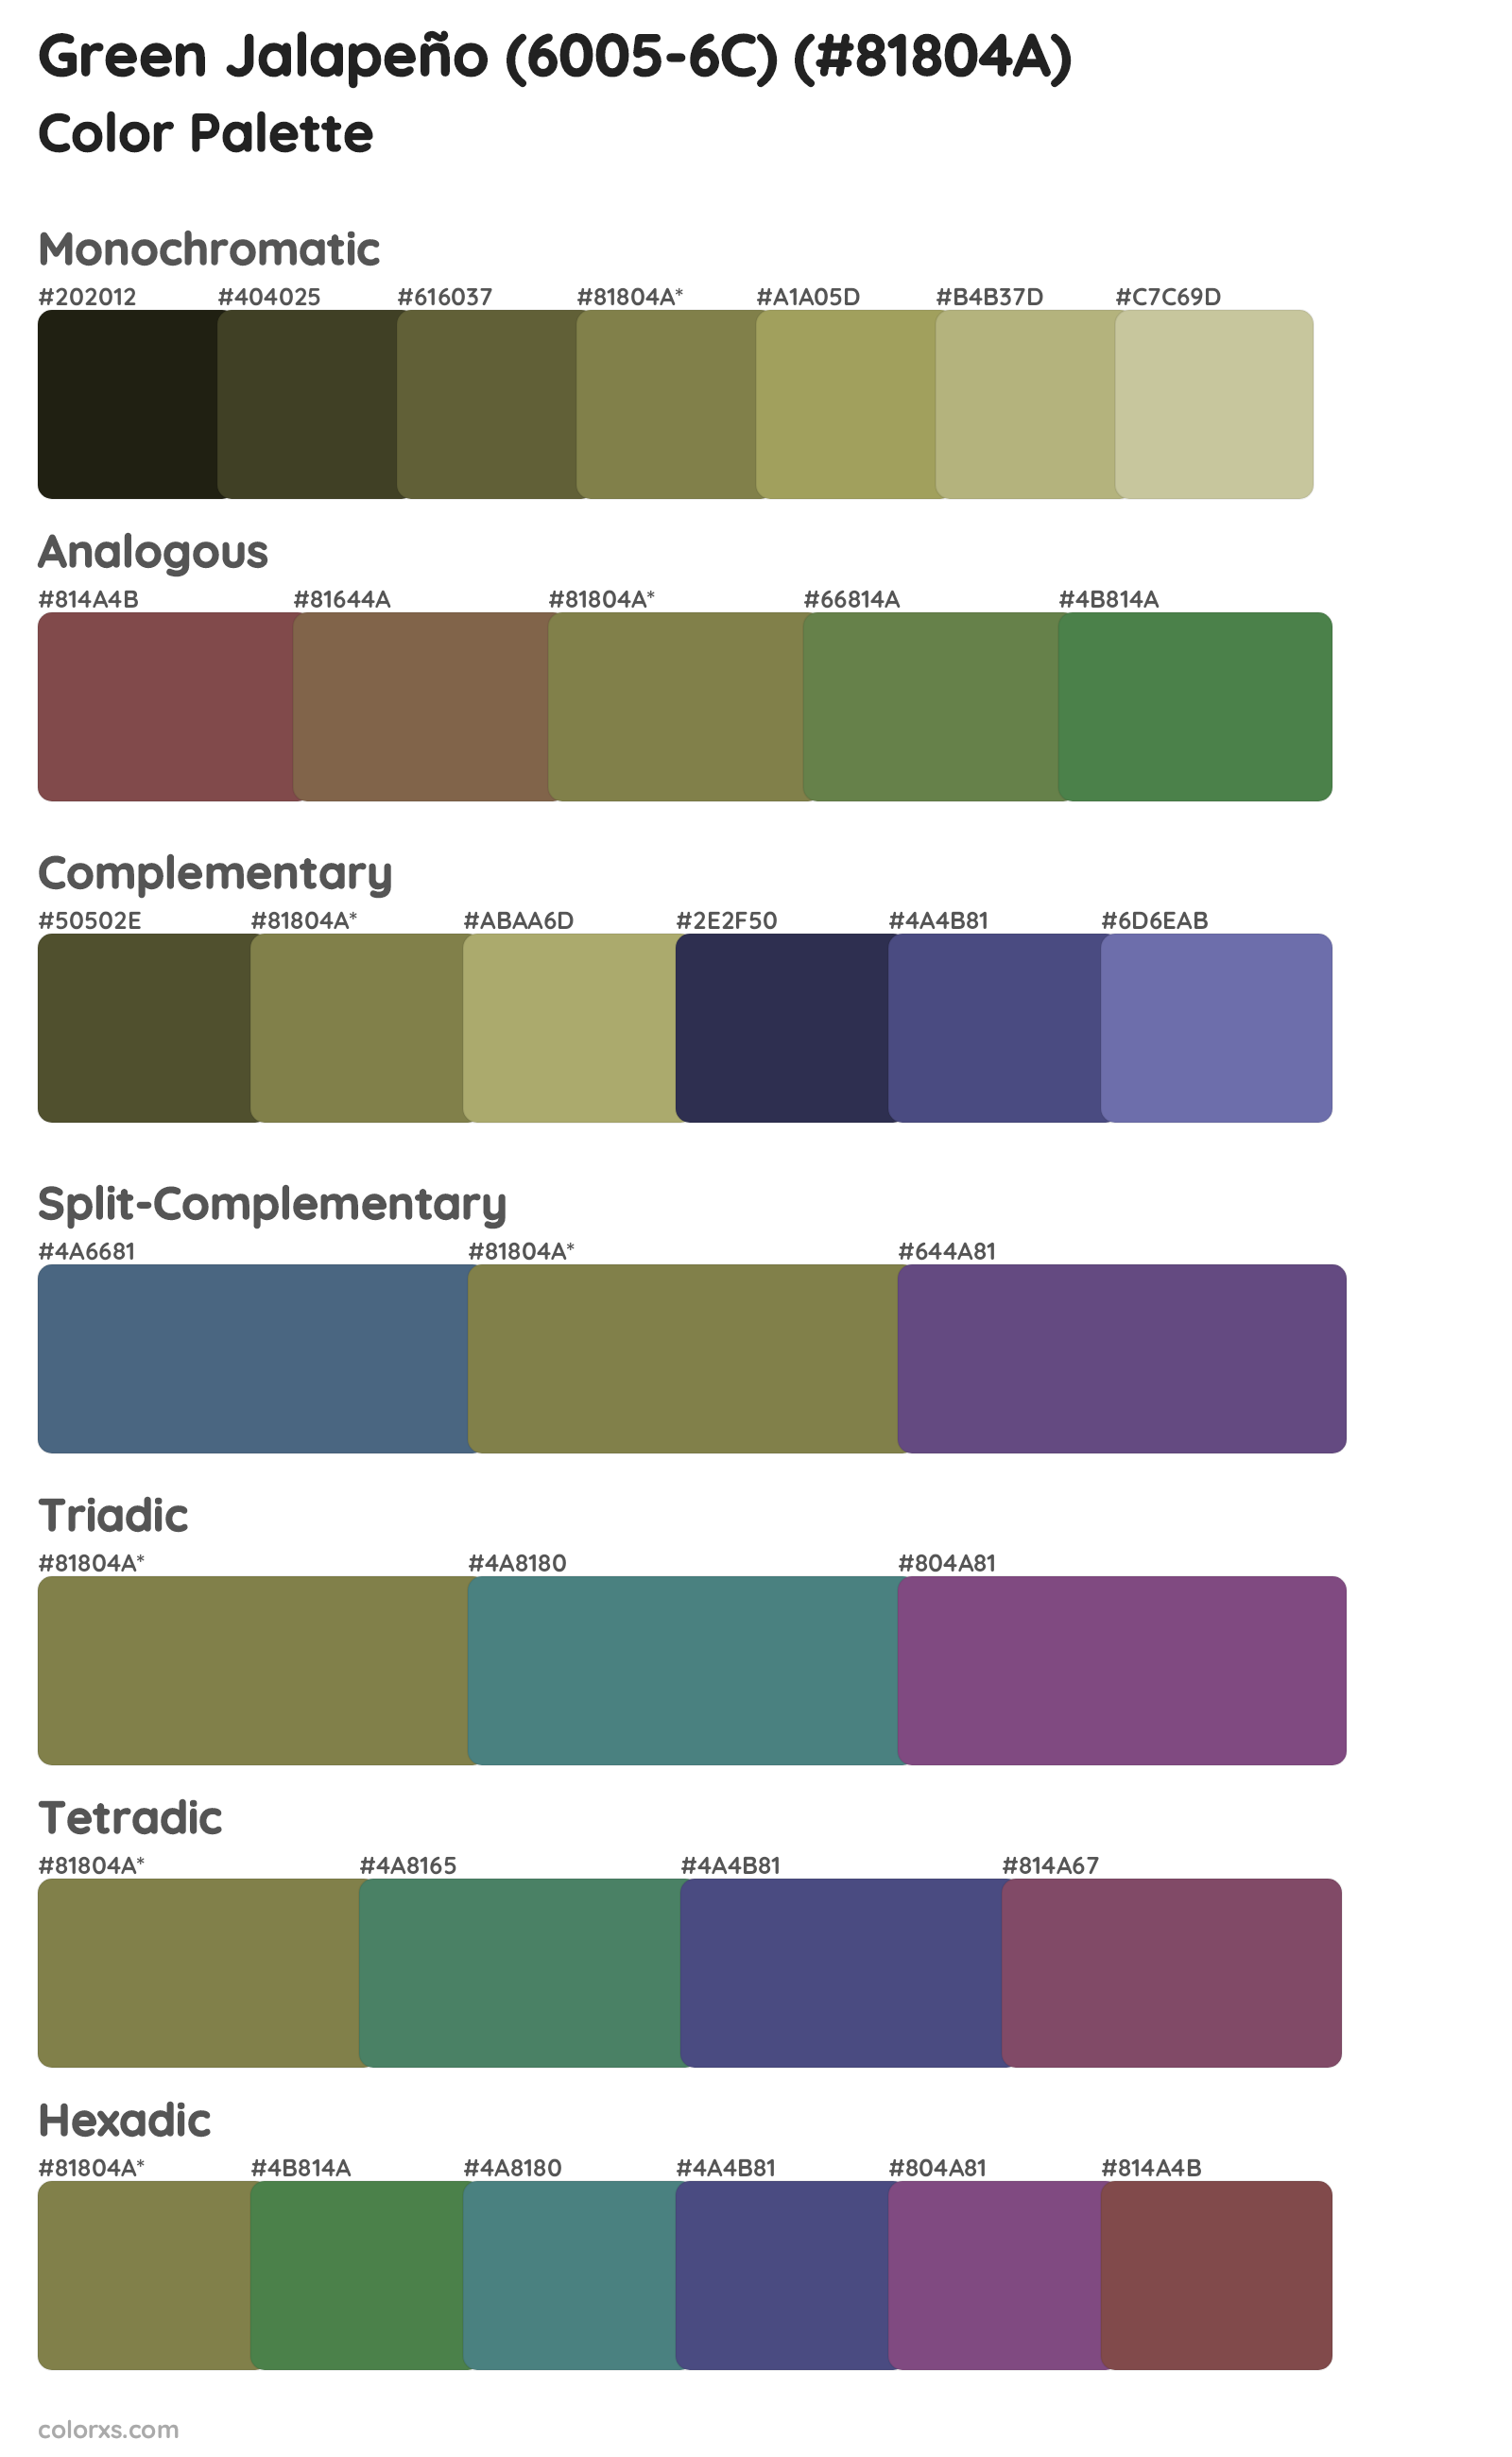 Green Jalapeño (6005-6C) Color Scheme Palettes